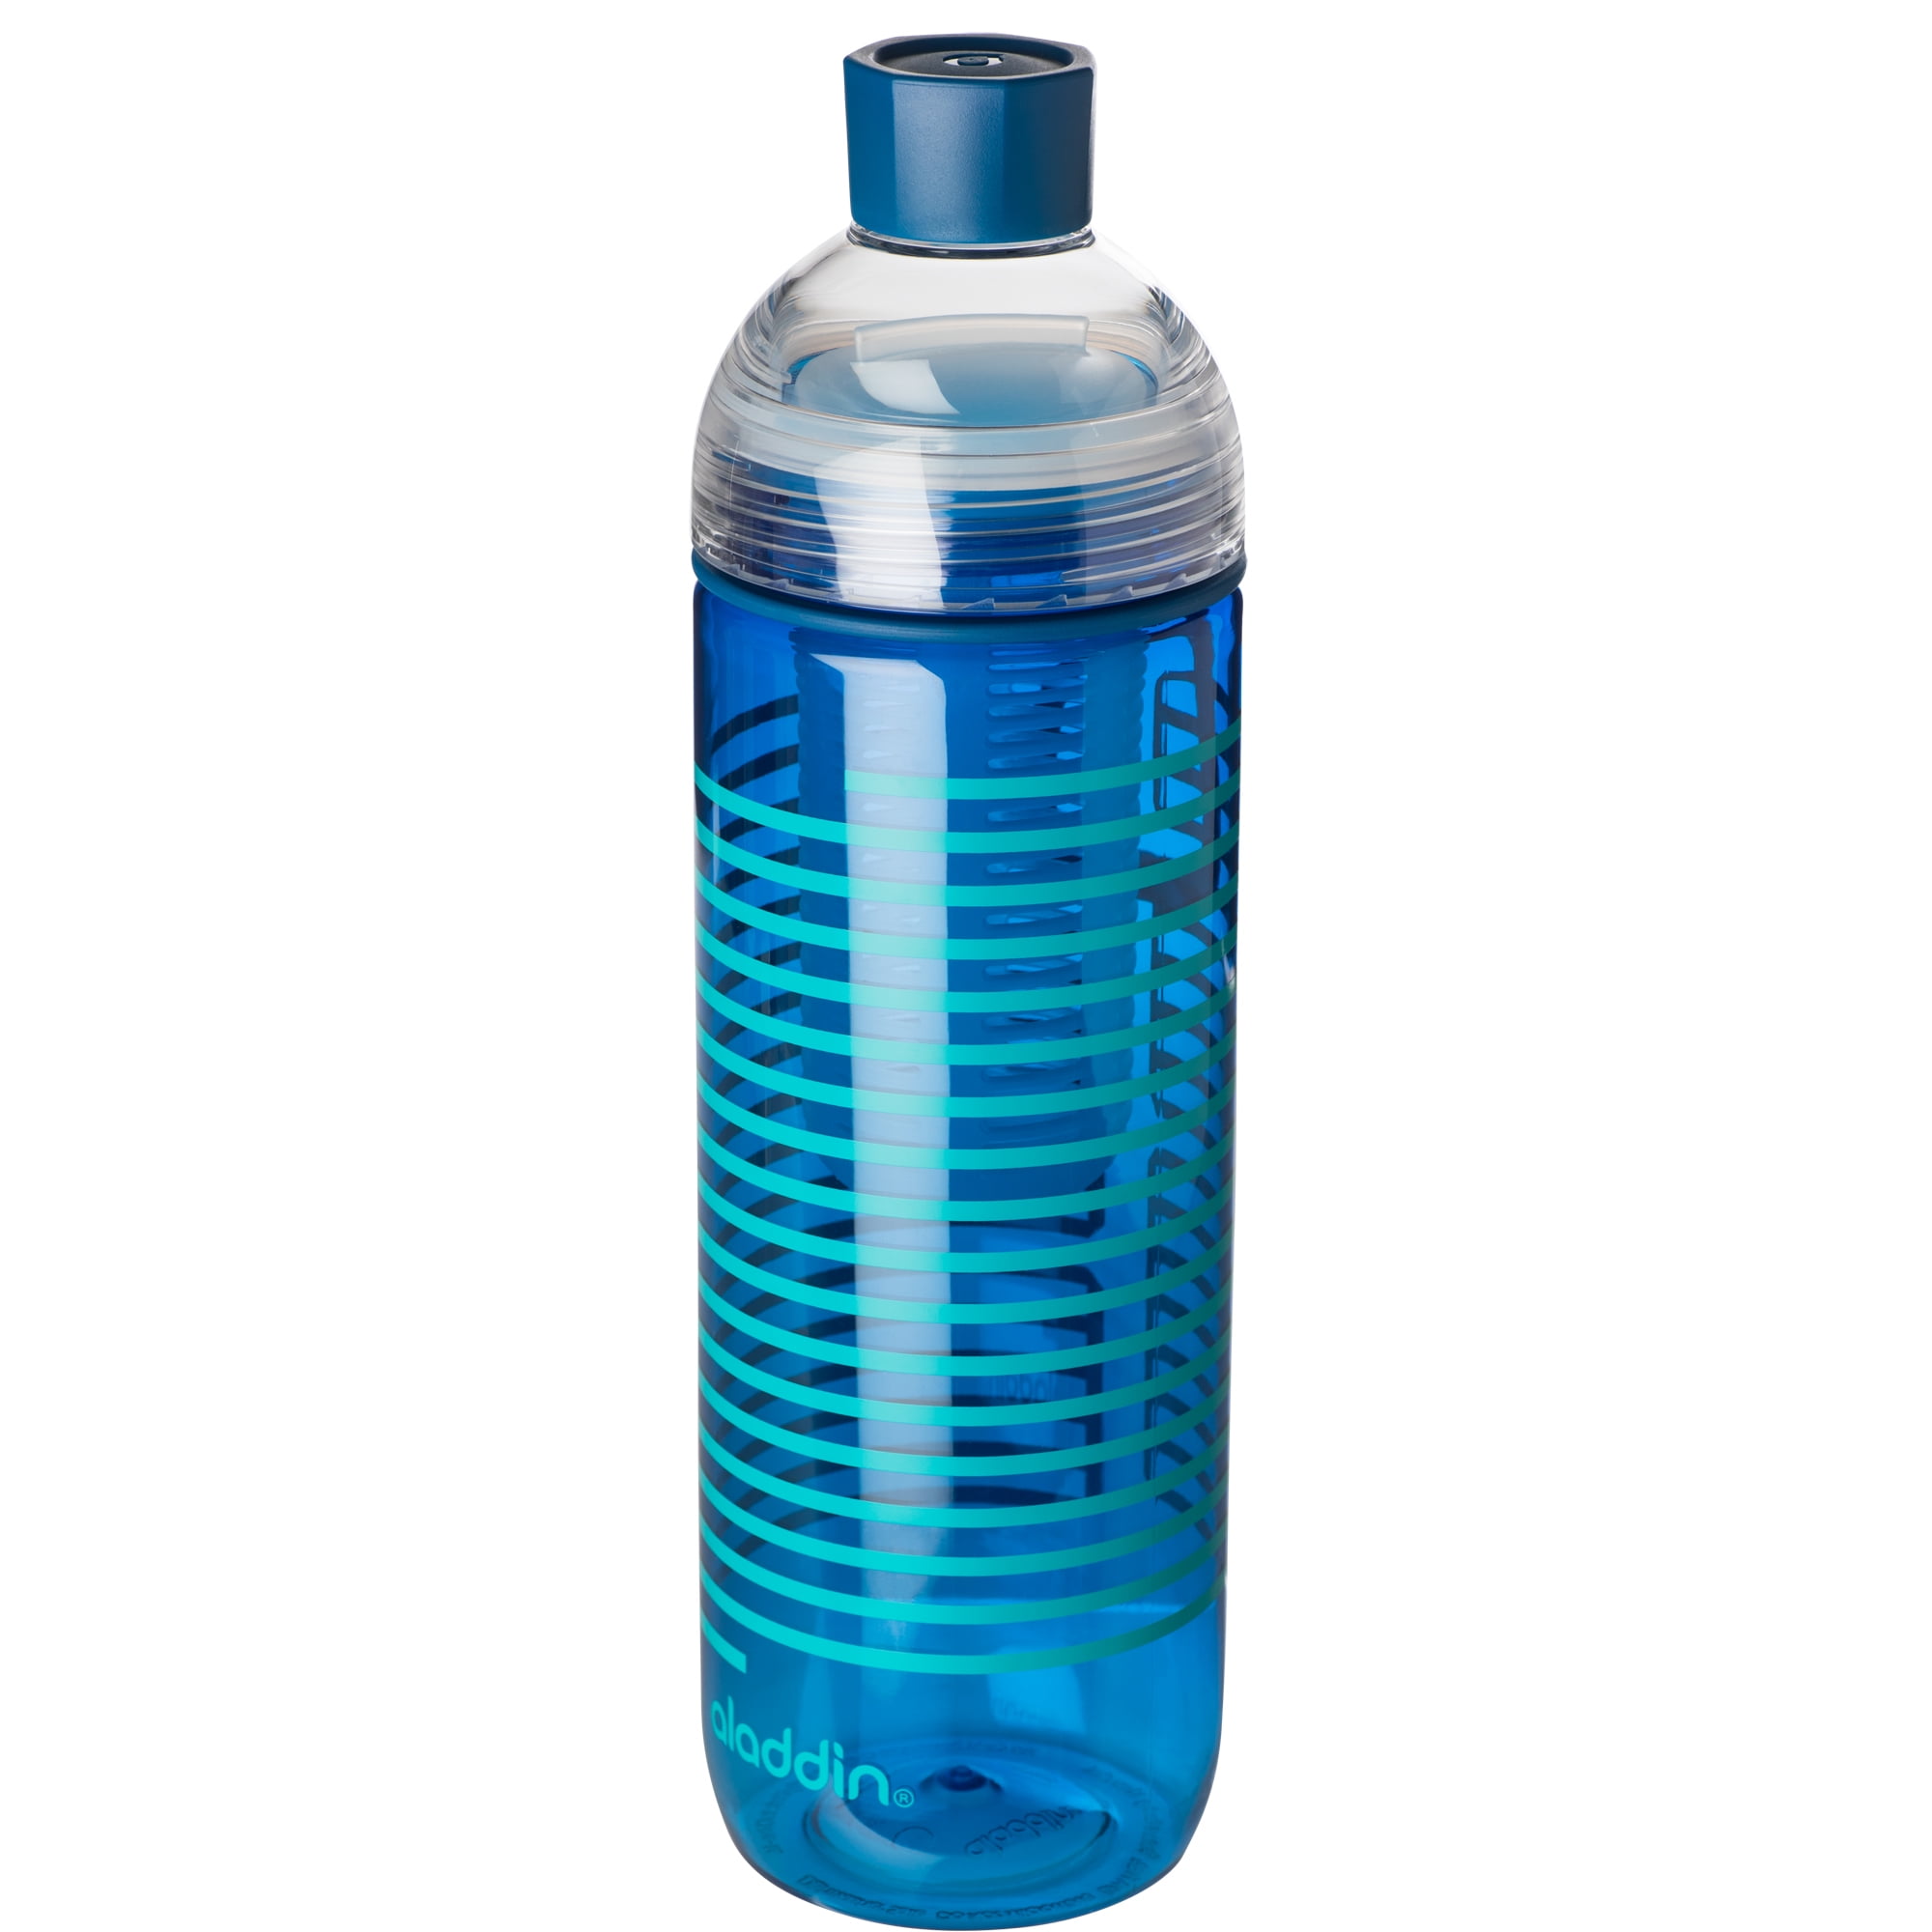 Aladdin 2Way Lid Water Bottle, Clear 18 oz